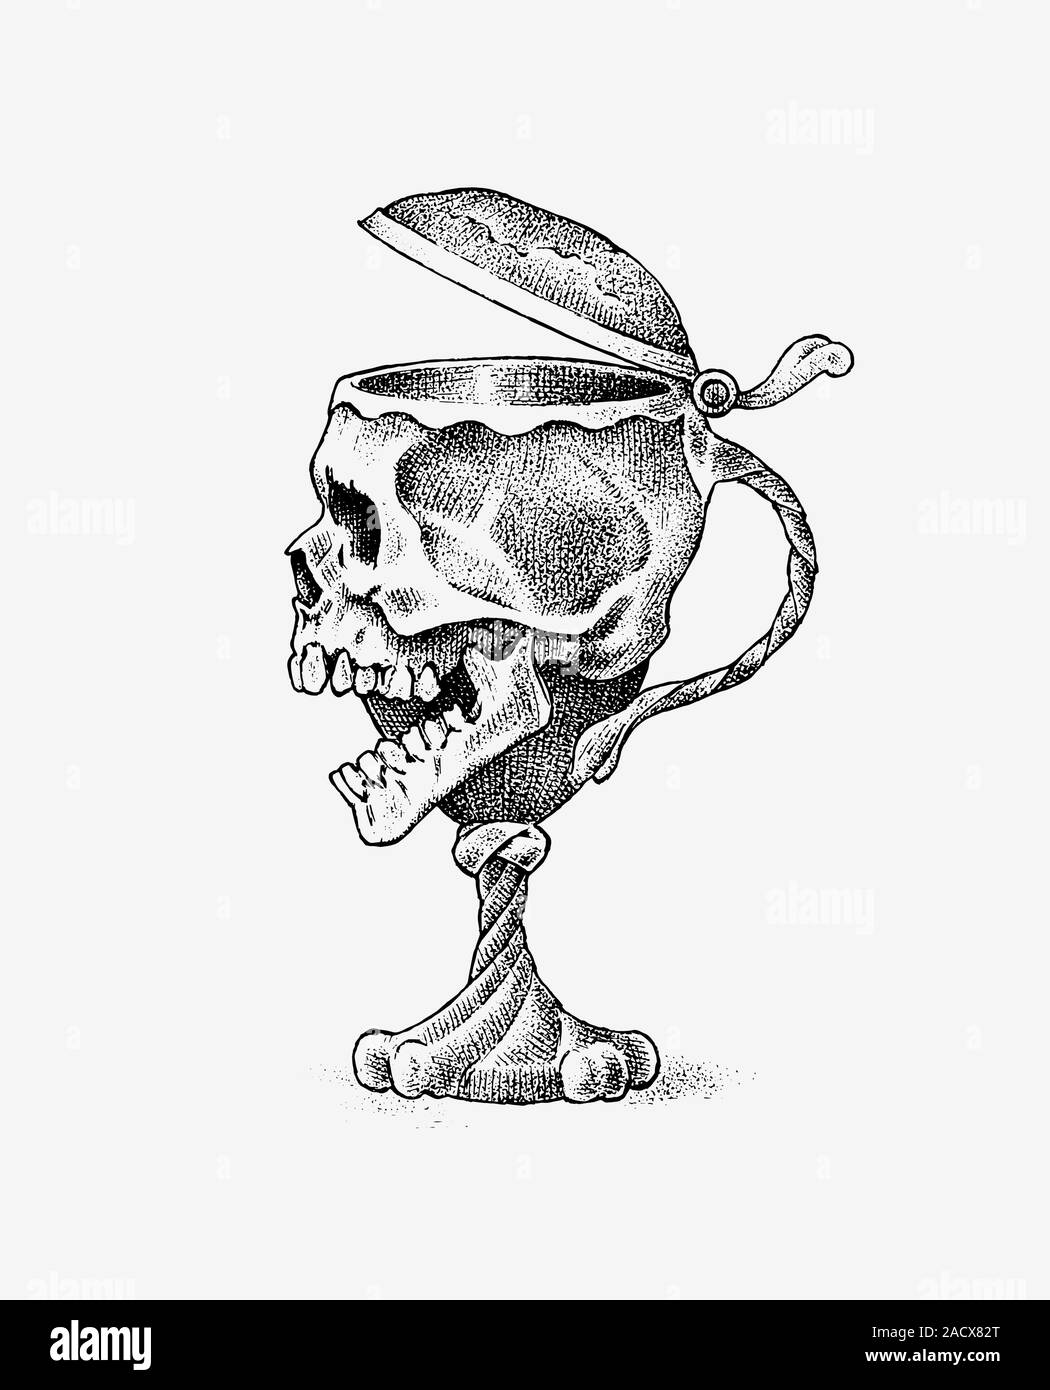 Crâne humain sous la forme d'un gobelet de vin. Retro old school esquisse pour tatouage dans un style vintage. Symbole monochrome. Gravé à la main pour badge rétro Illustration de Vecteur